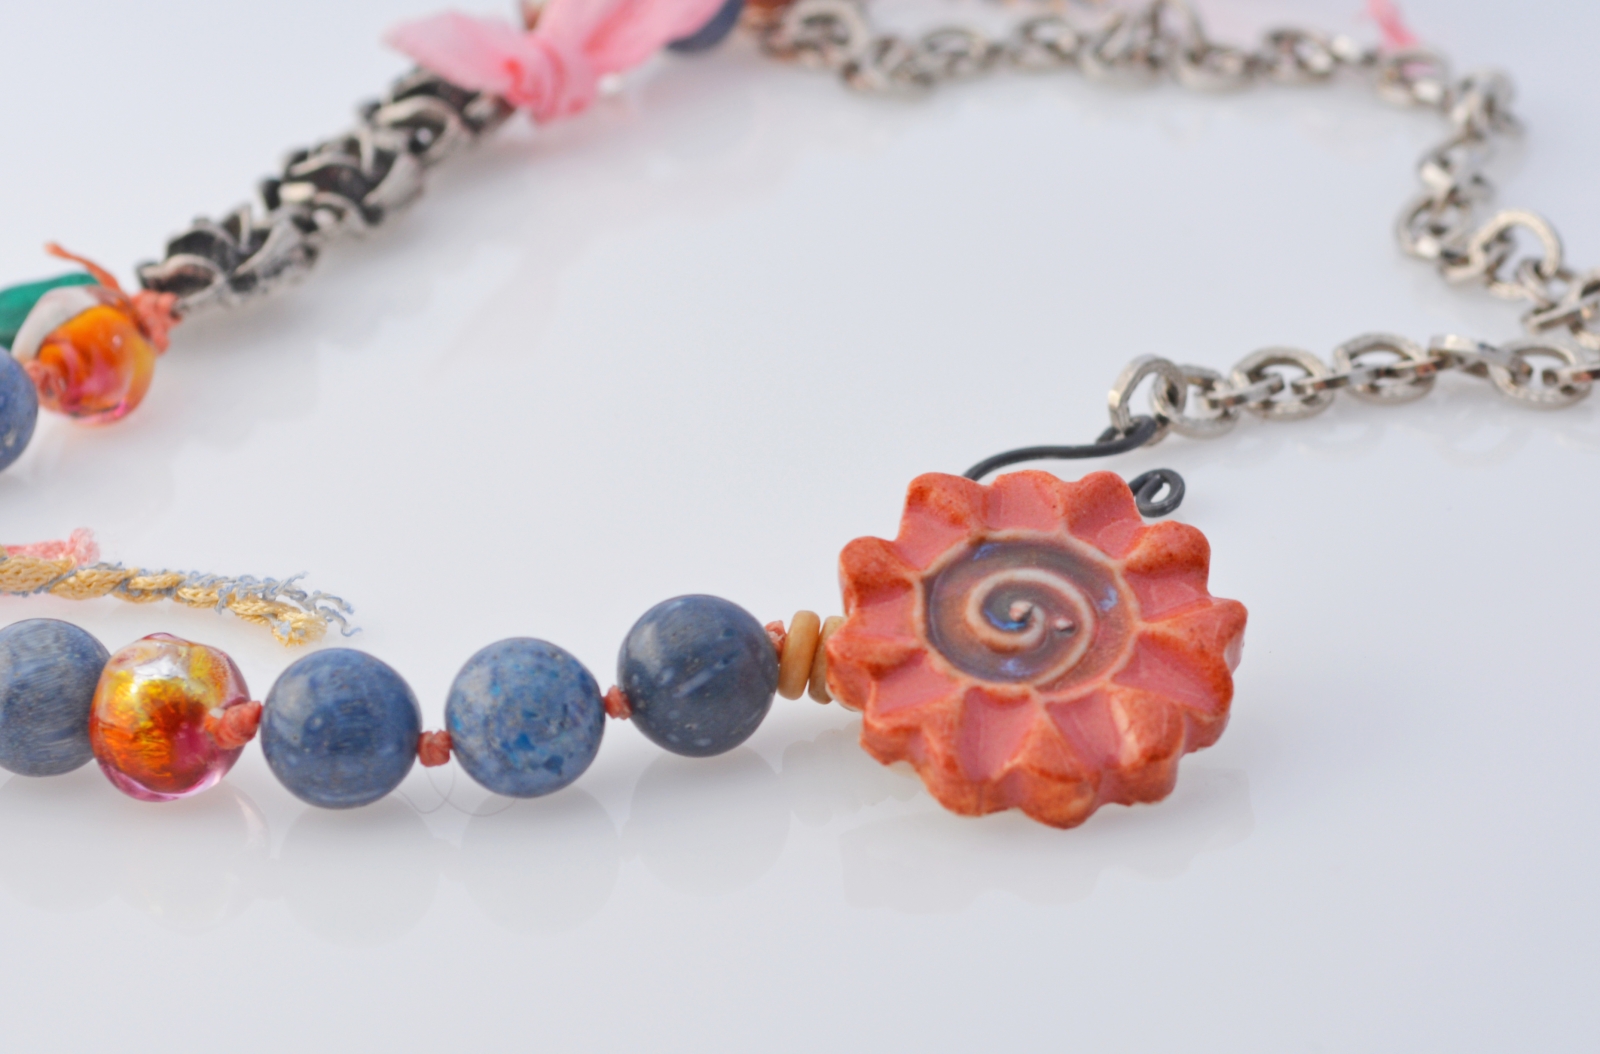 Rose Garden artisan necklace